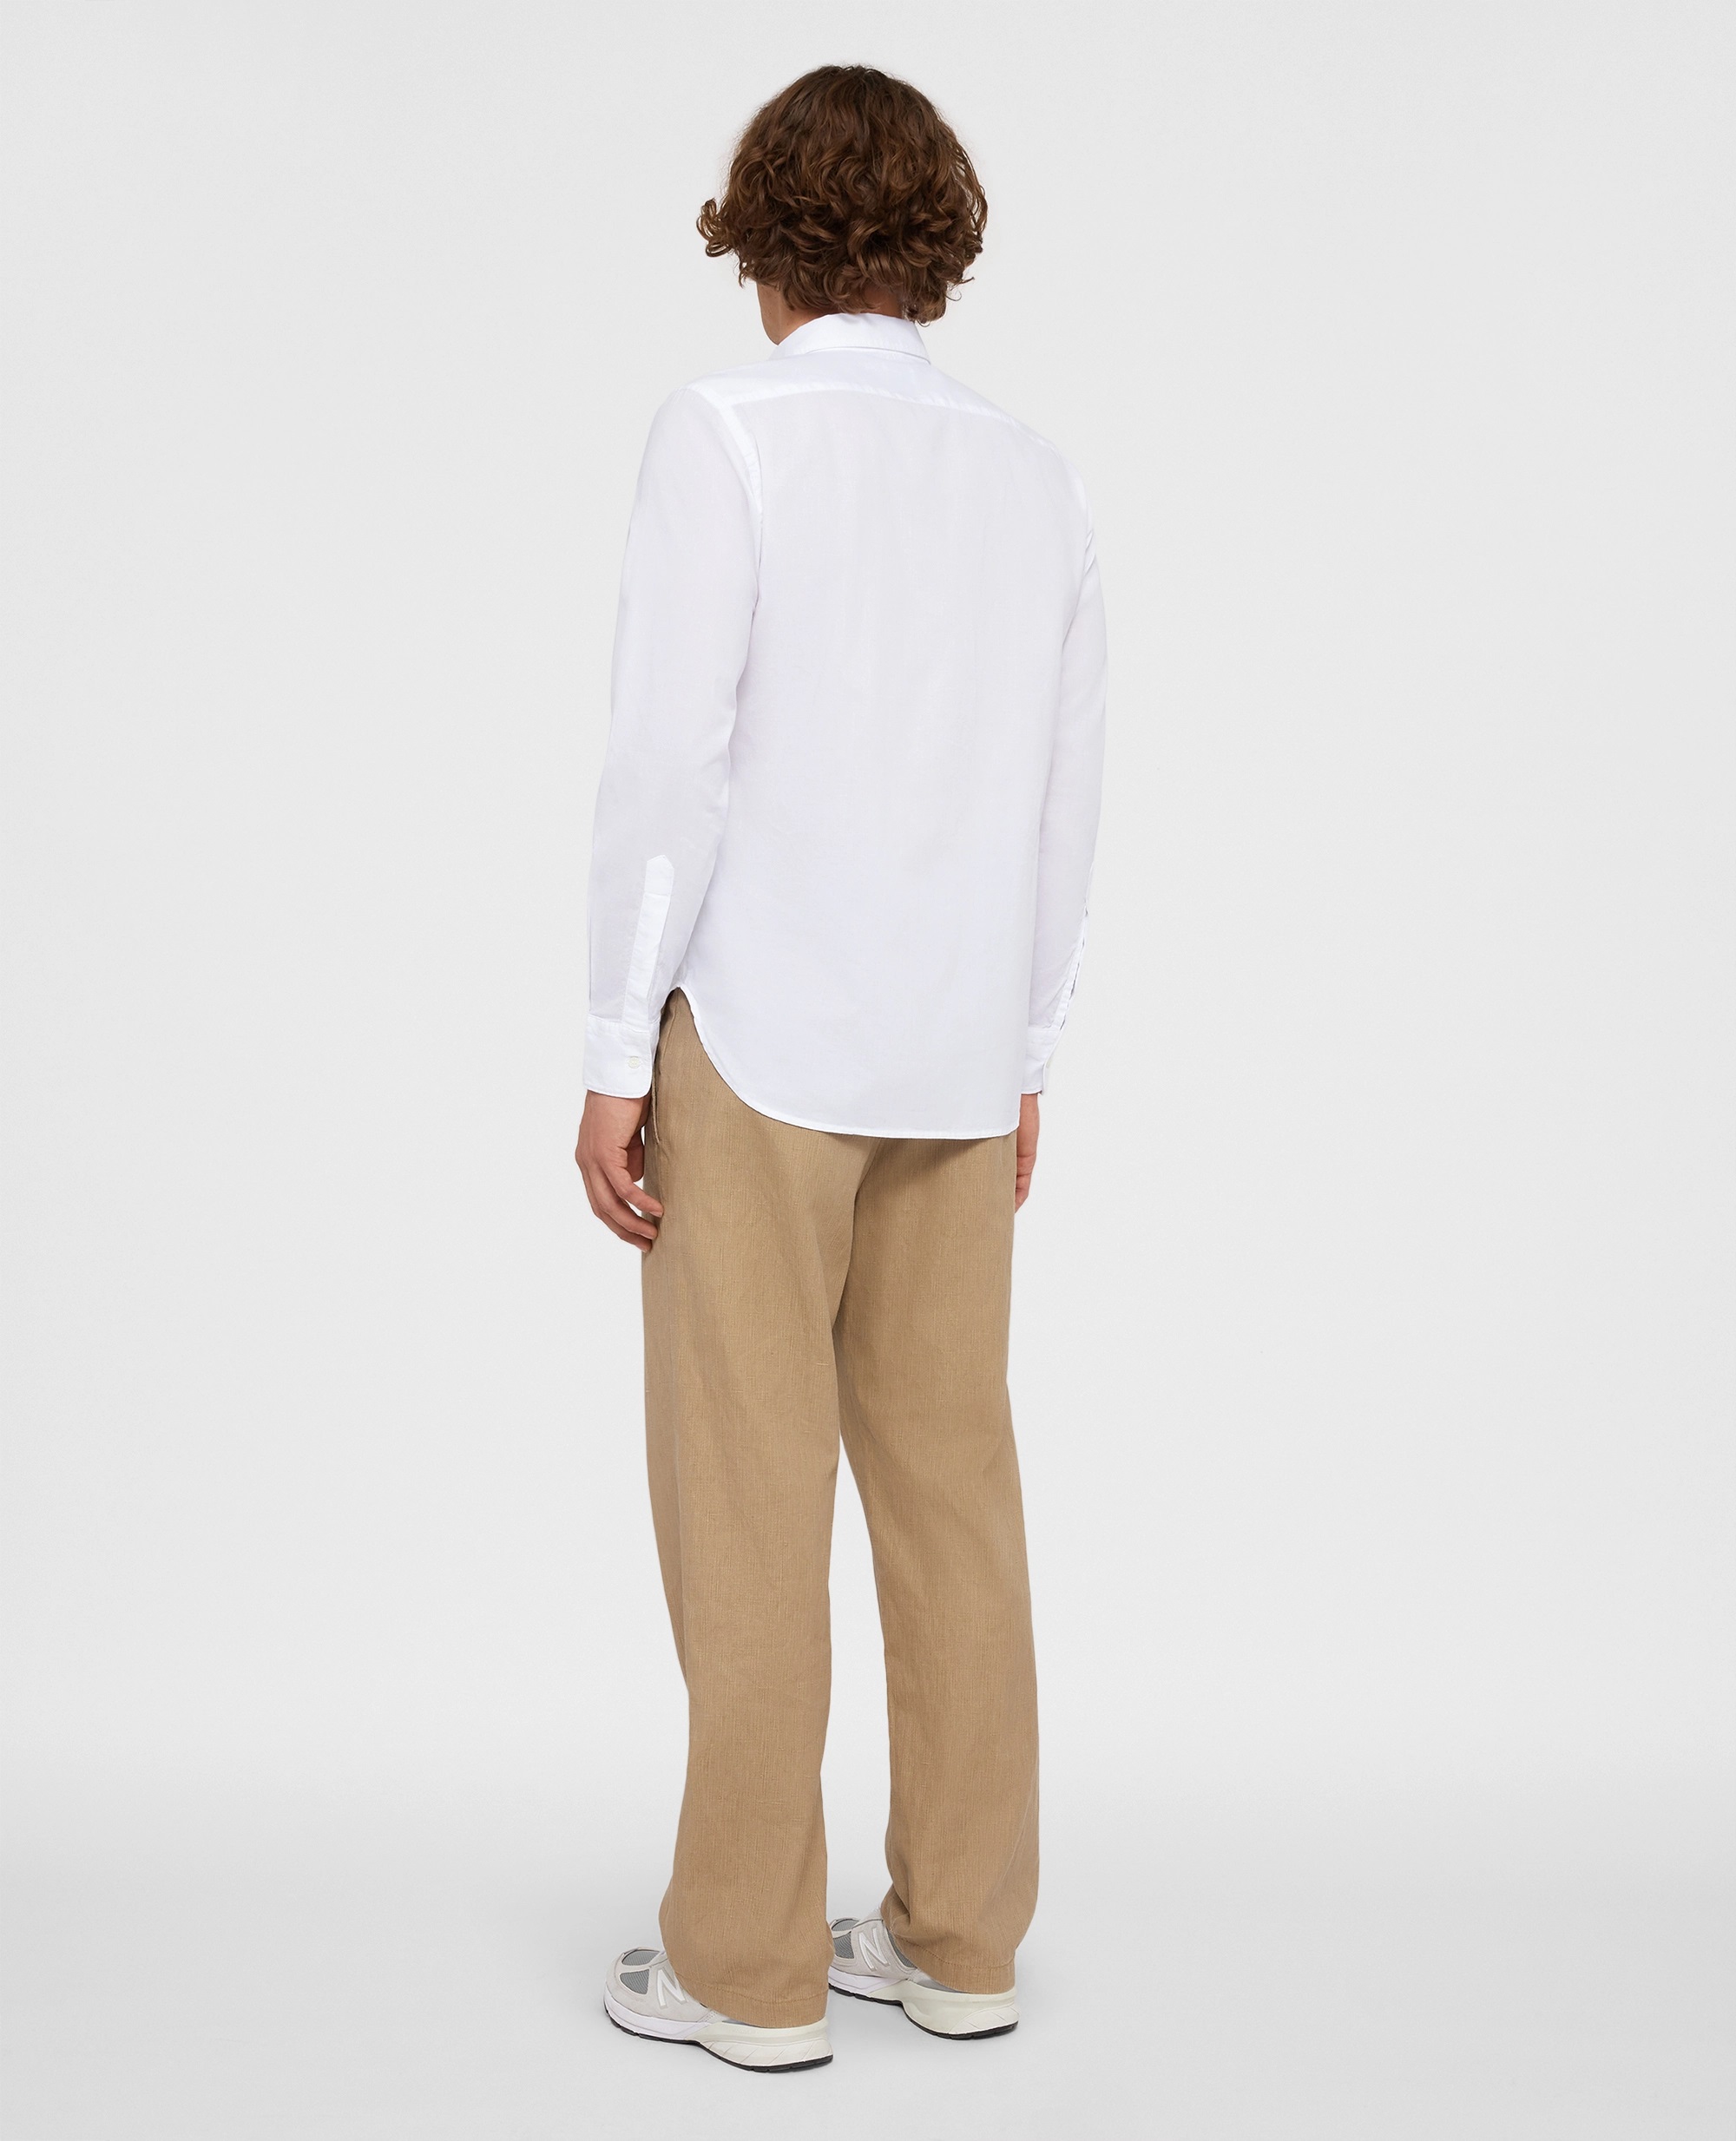 ASPESI Classic Regular Shirt in White M